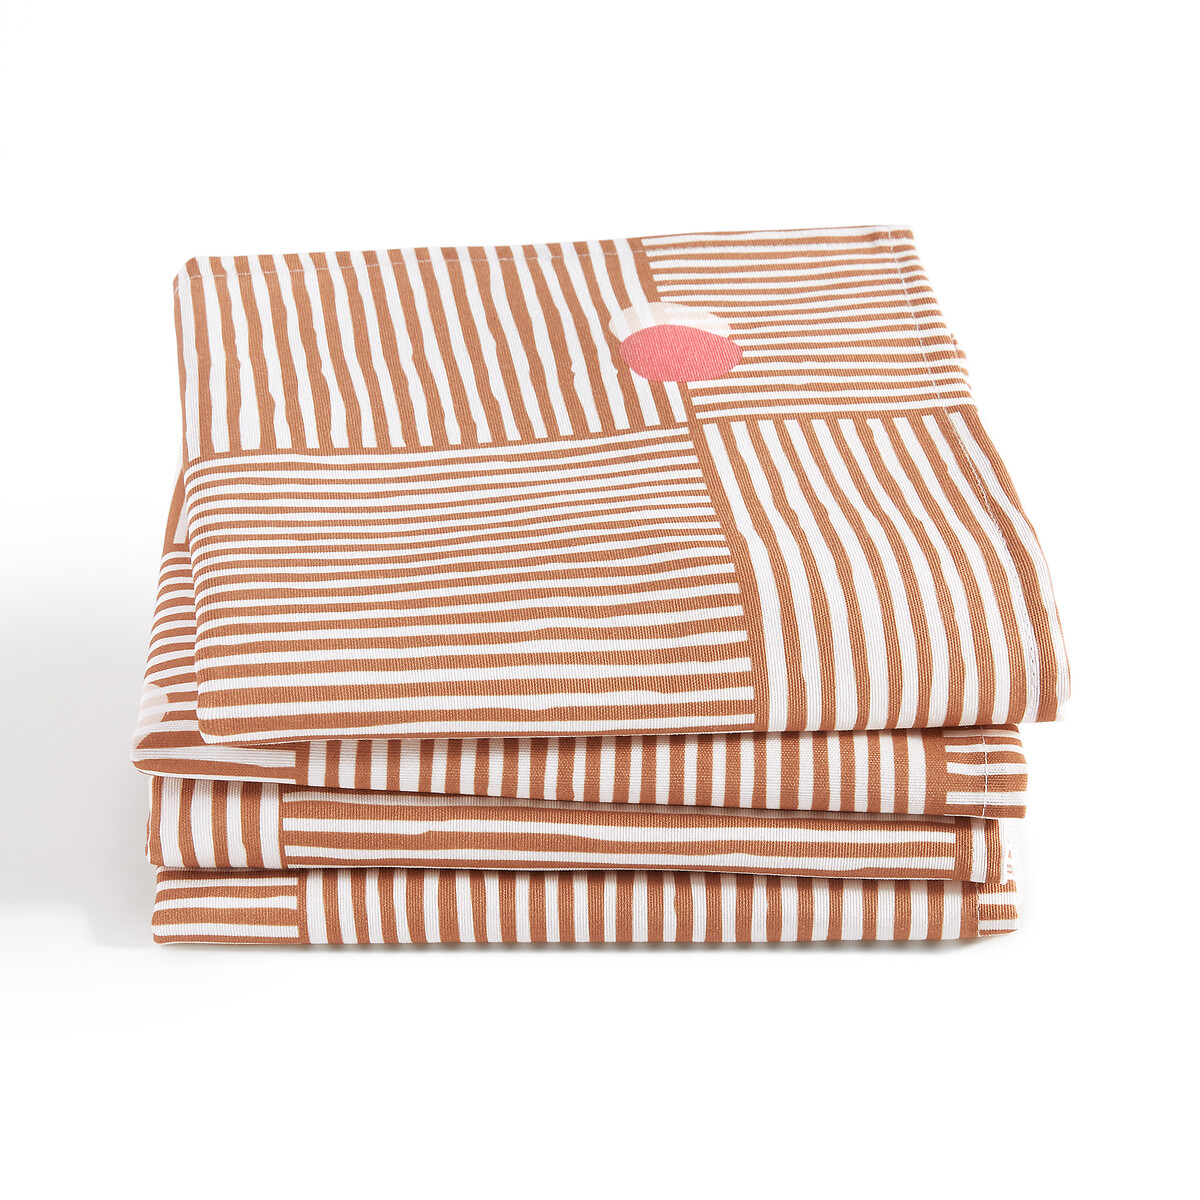 Комплект из четырех столовых салфеток LA REDOUTE INTERIEURS Из поликоттона Haria 45 x 45 см оранжевый, размер 45 x 45 см - фото 1